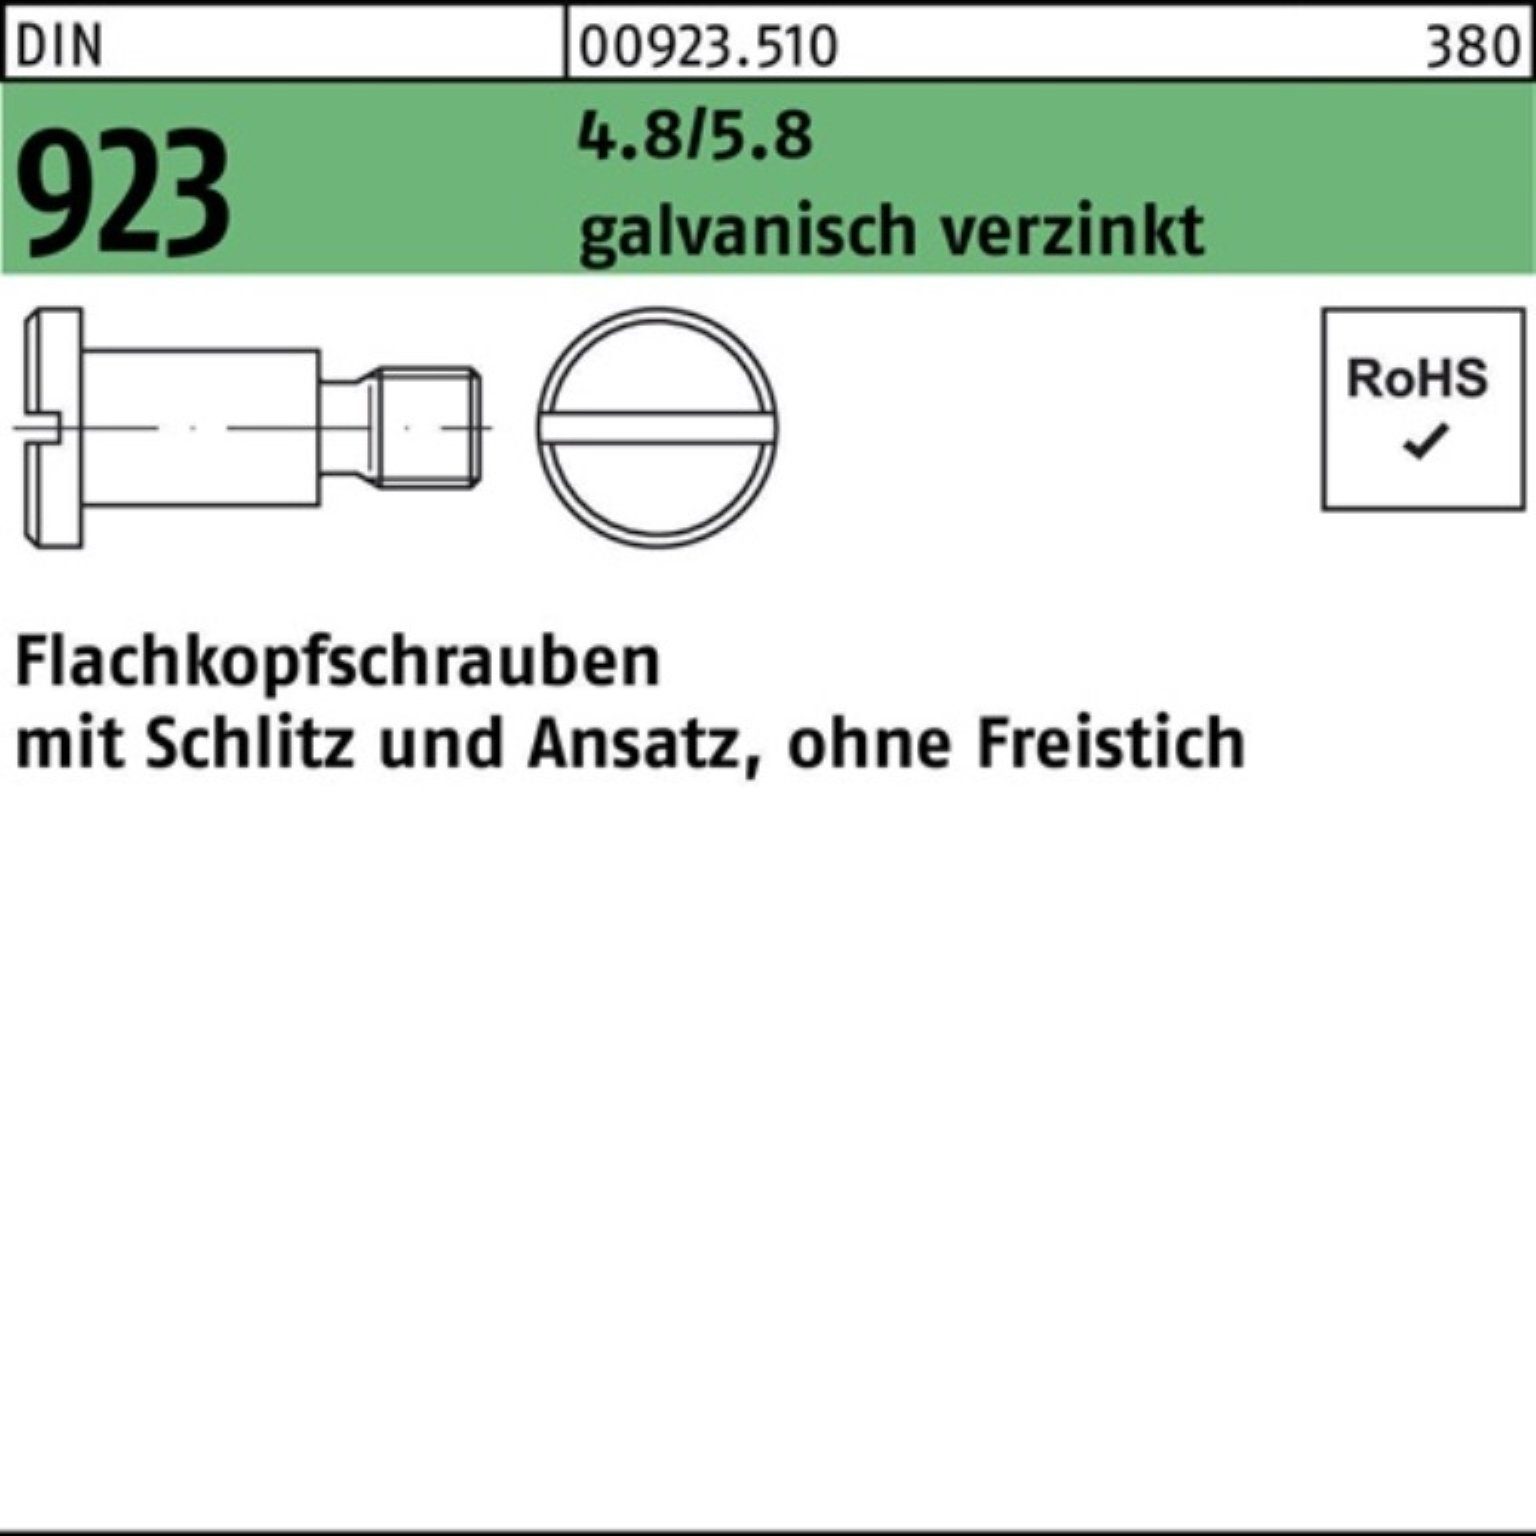 Reyher 923 Schraube 4.8/5.8 Pack M8x12x11,0 DIN Schlitz/Ansatz Flachkopfschraube 100er